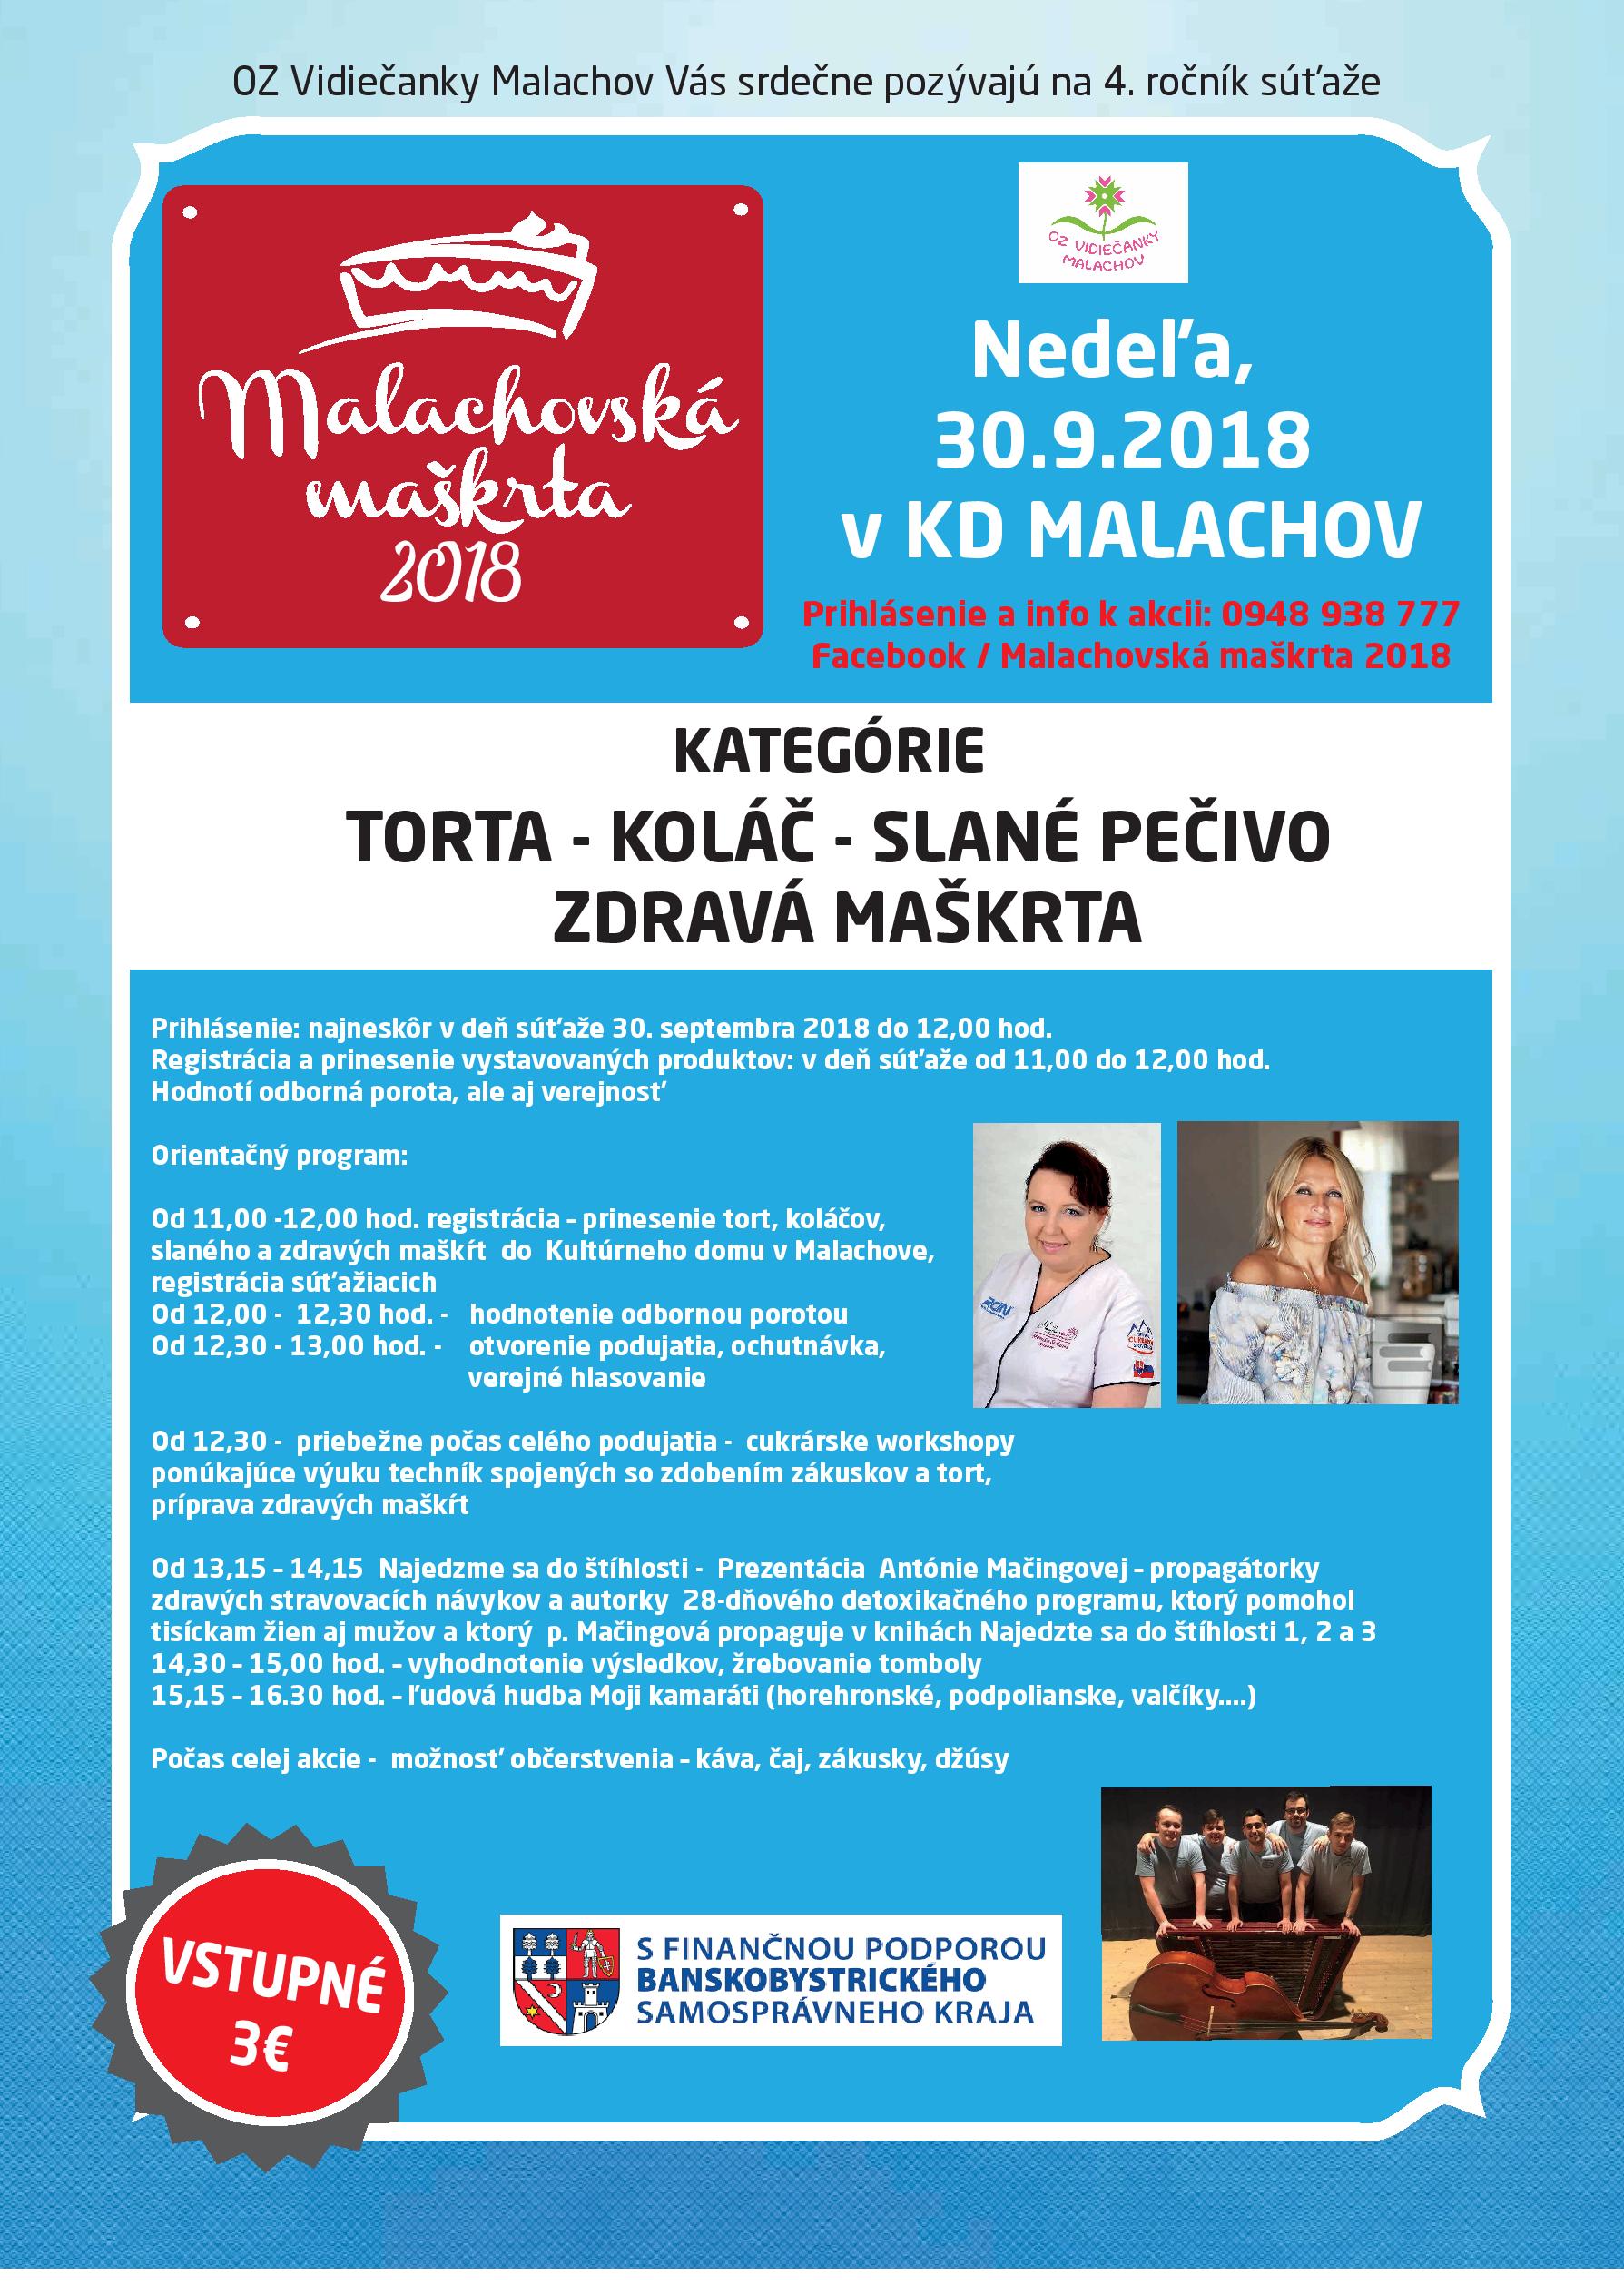 Malachovsk makrta 2018 - 4. ronk